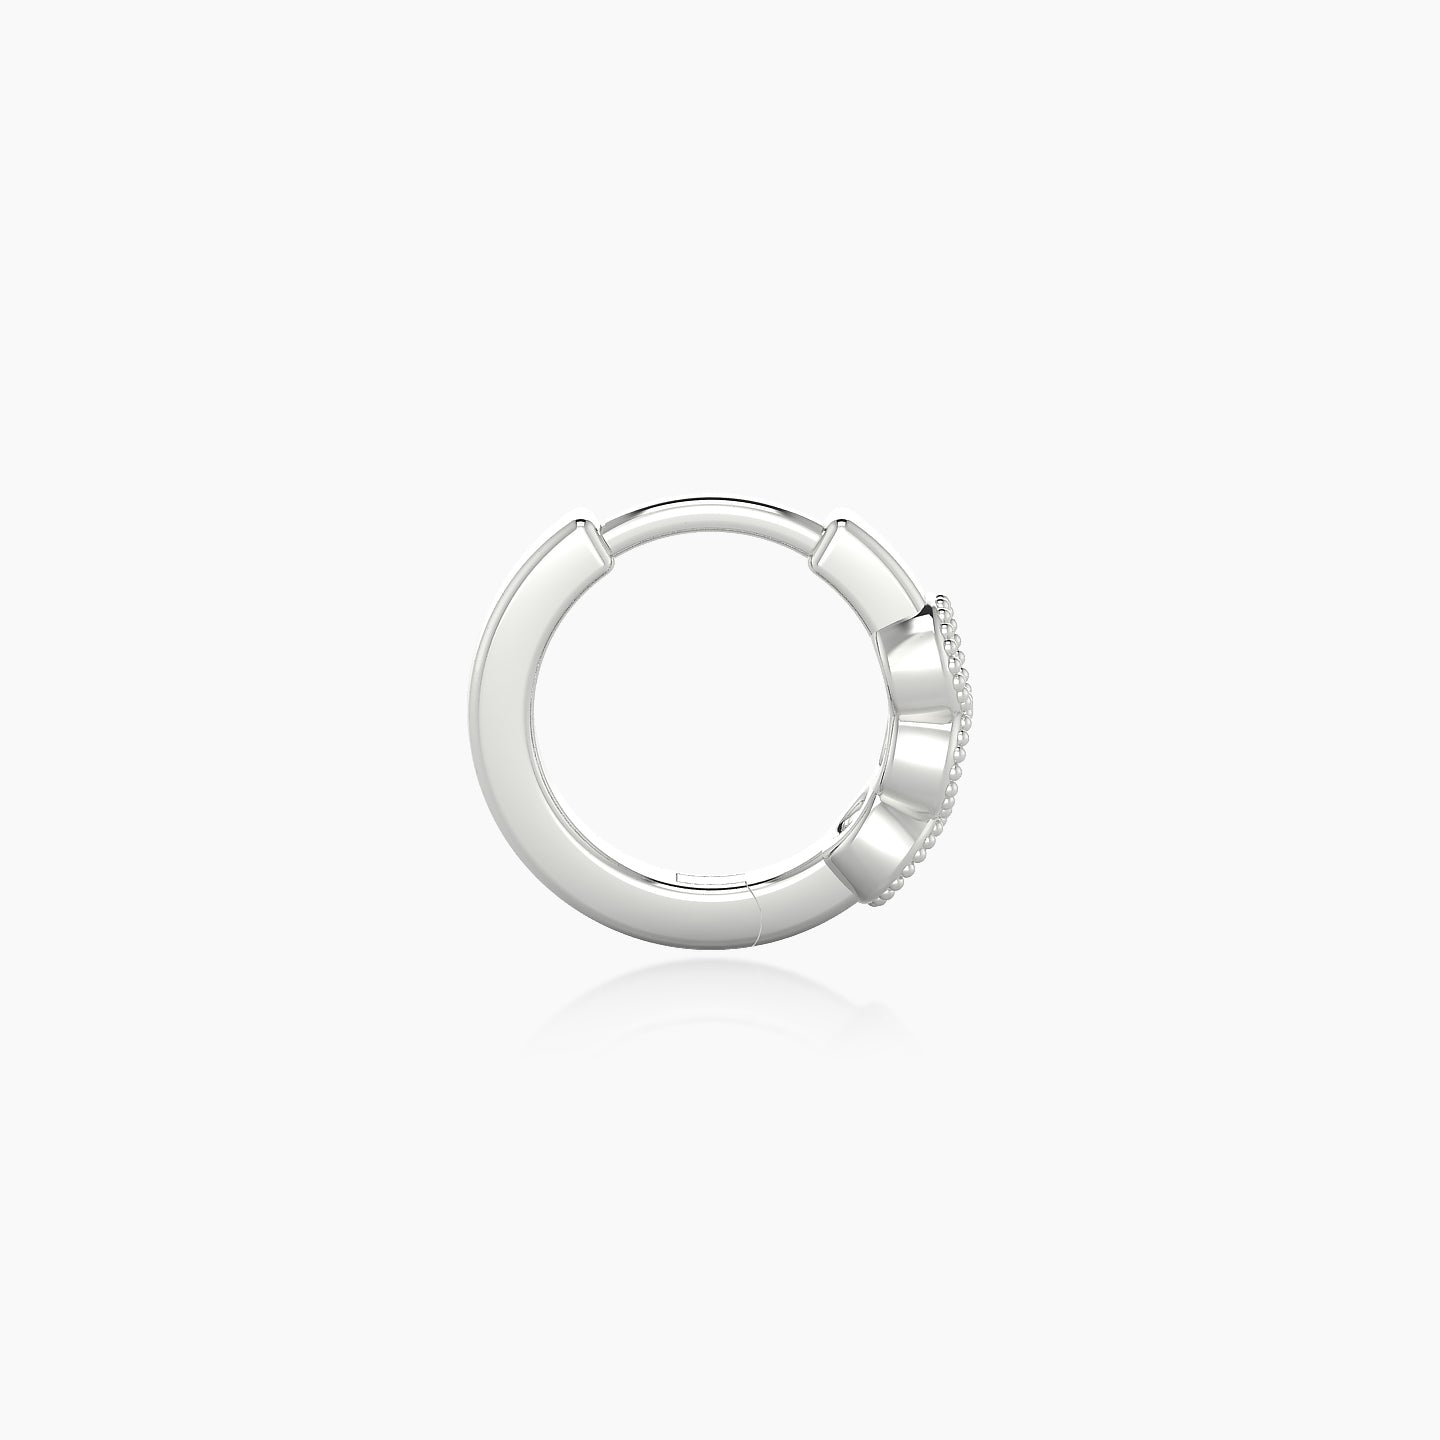 Irene | 18k White Gold 6.5 mm Trilogy Diamond Nose Ring Piercing